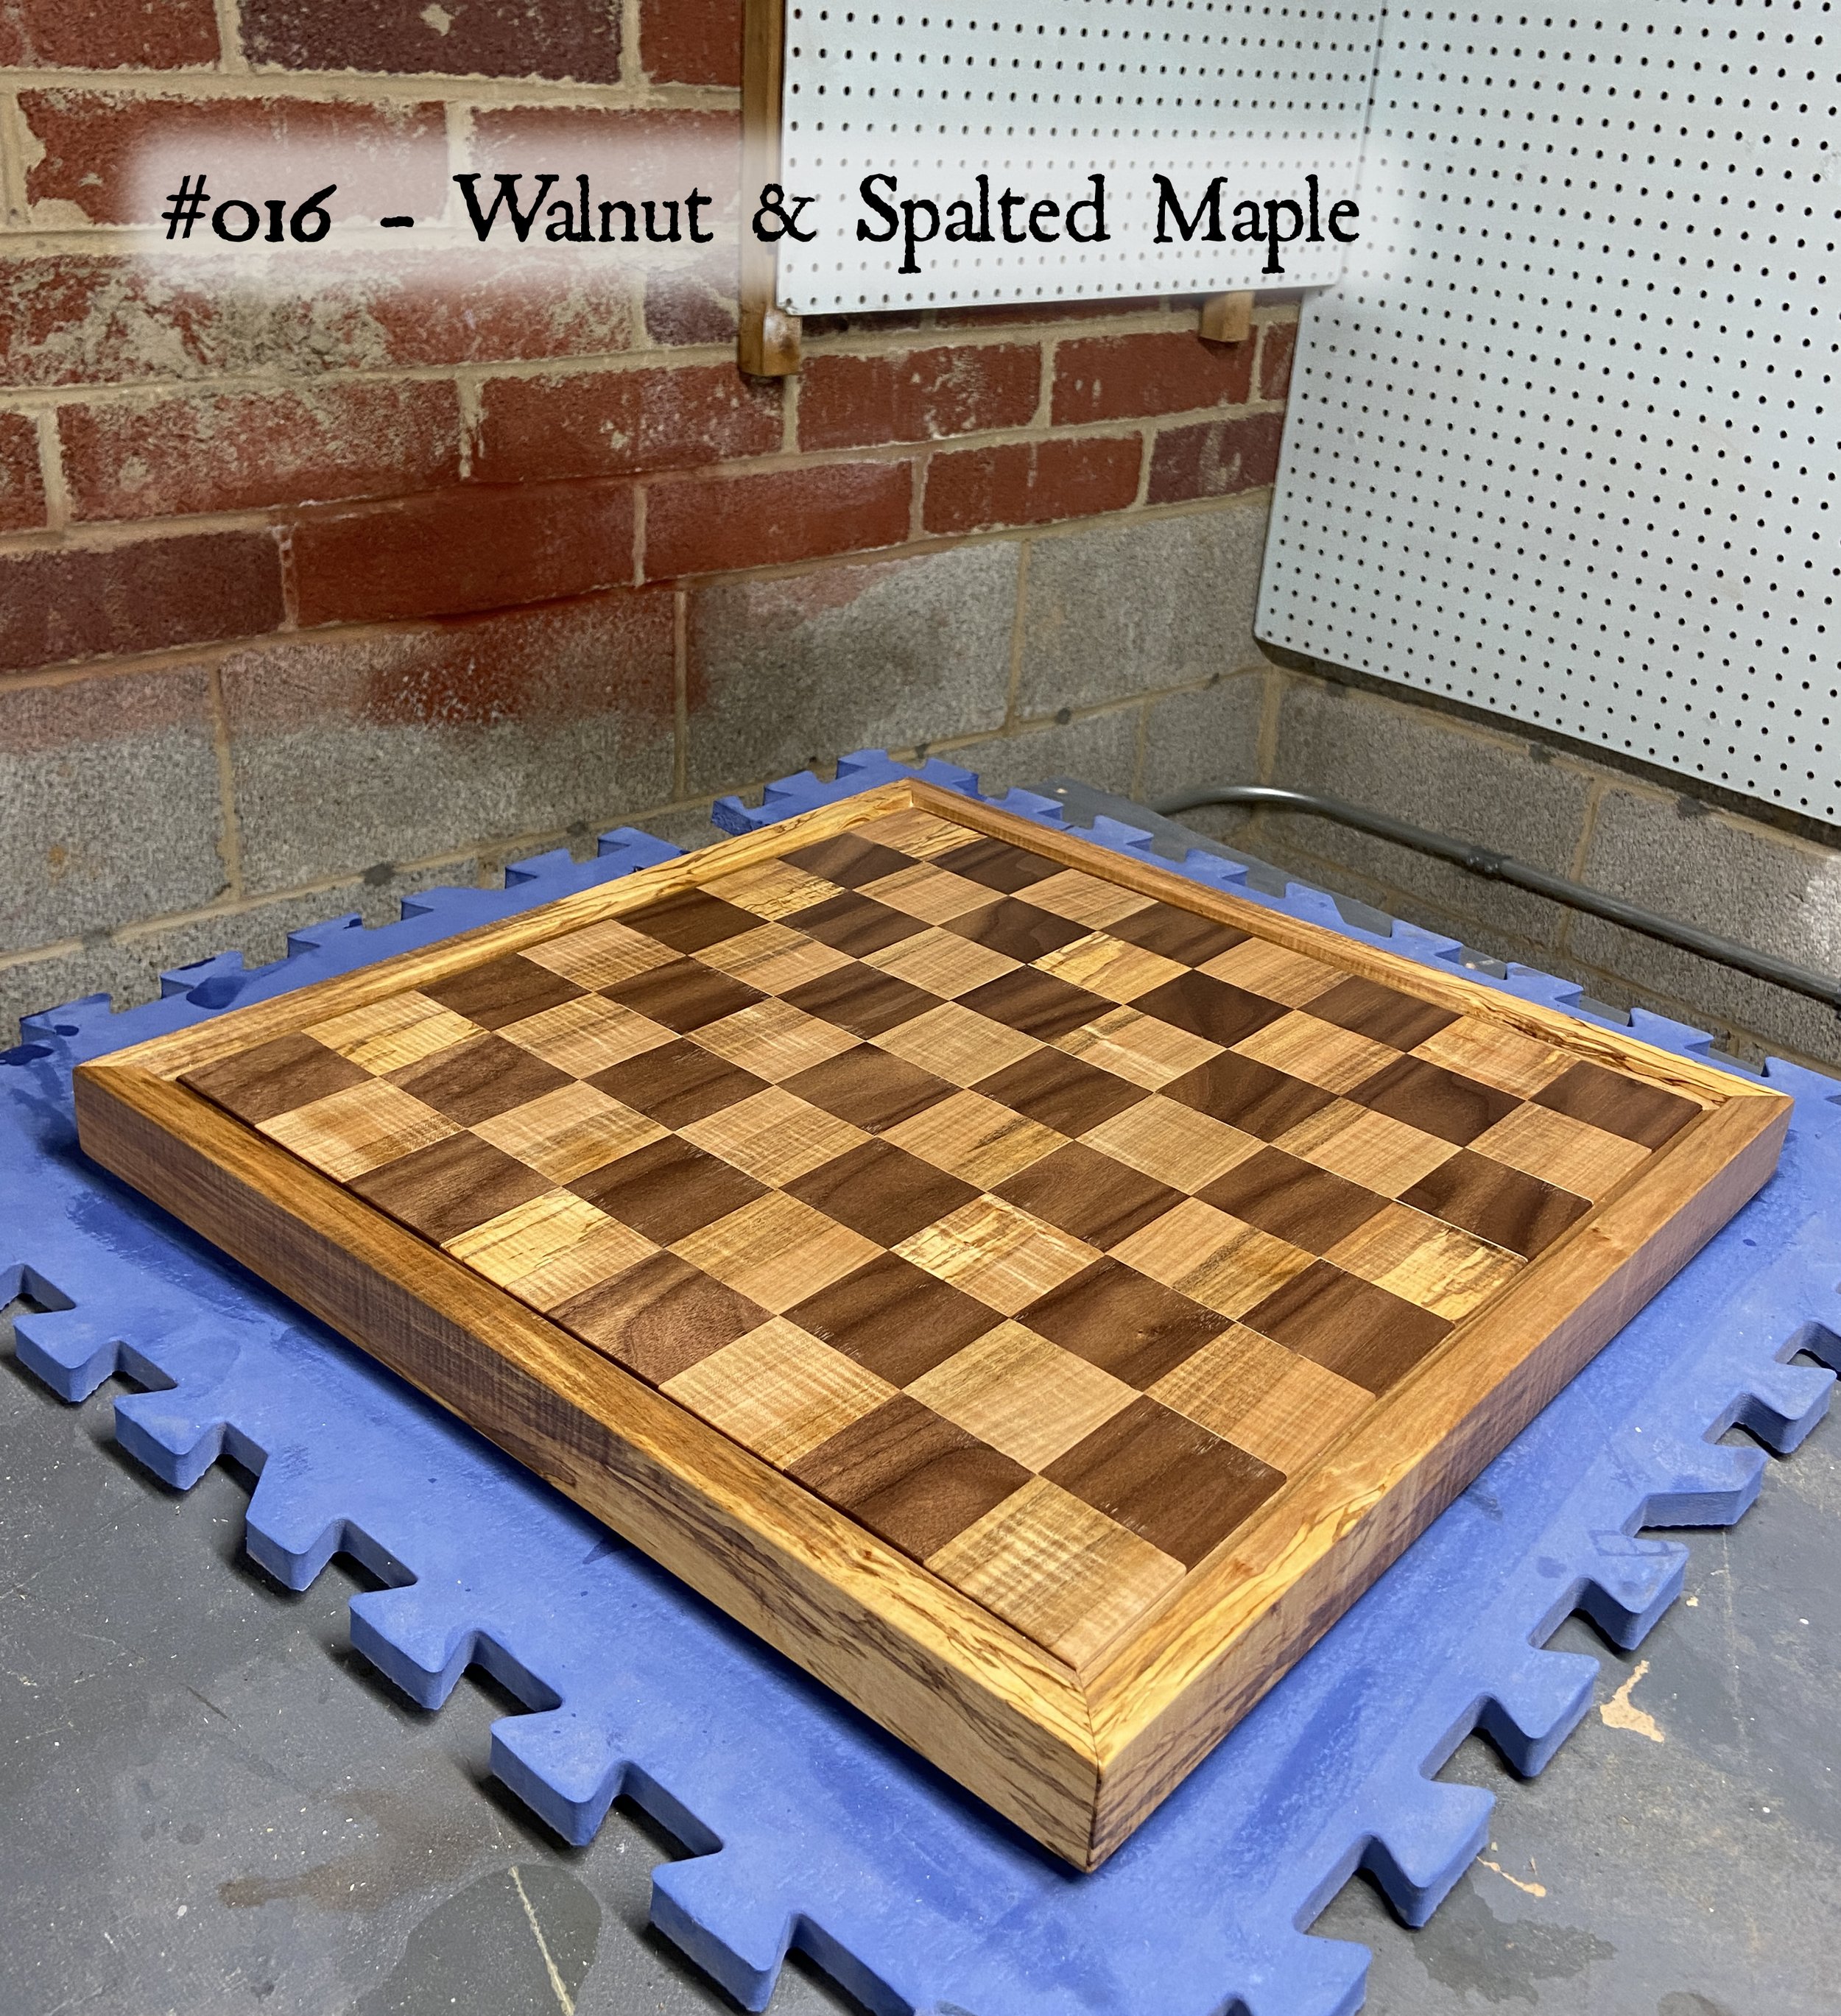 Board #016 – Black Walnut & Spalted Maple